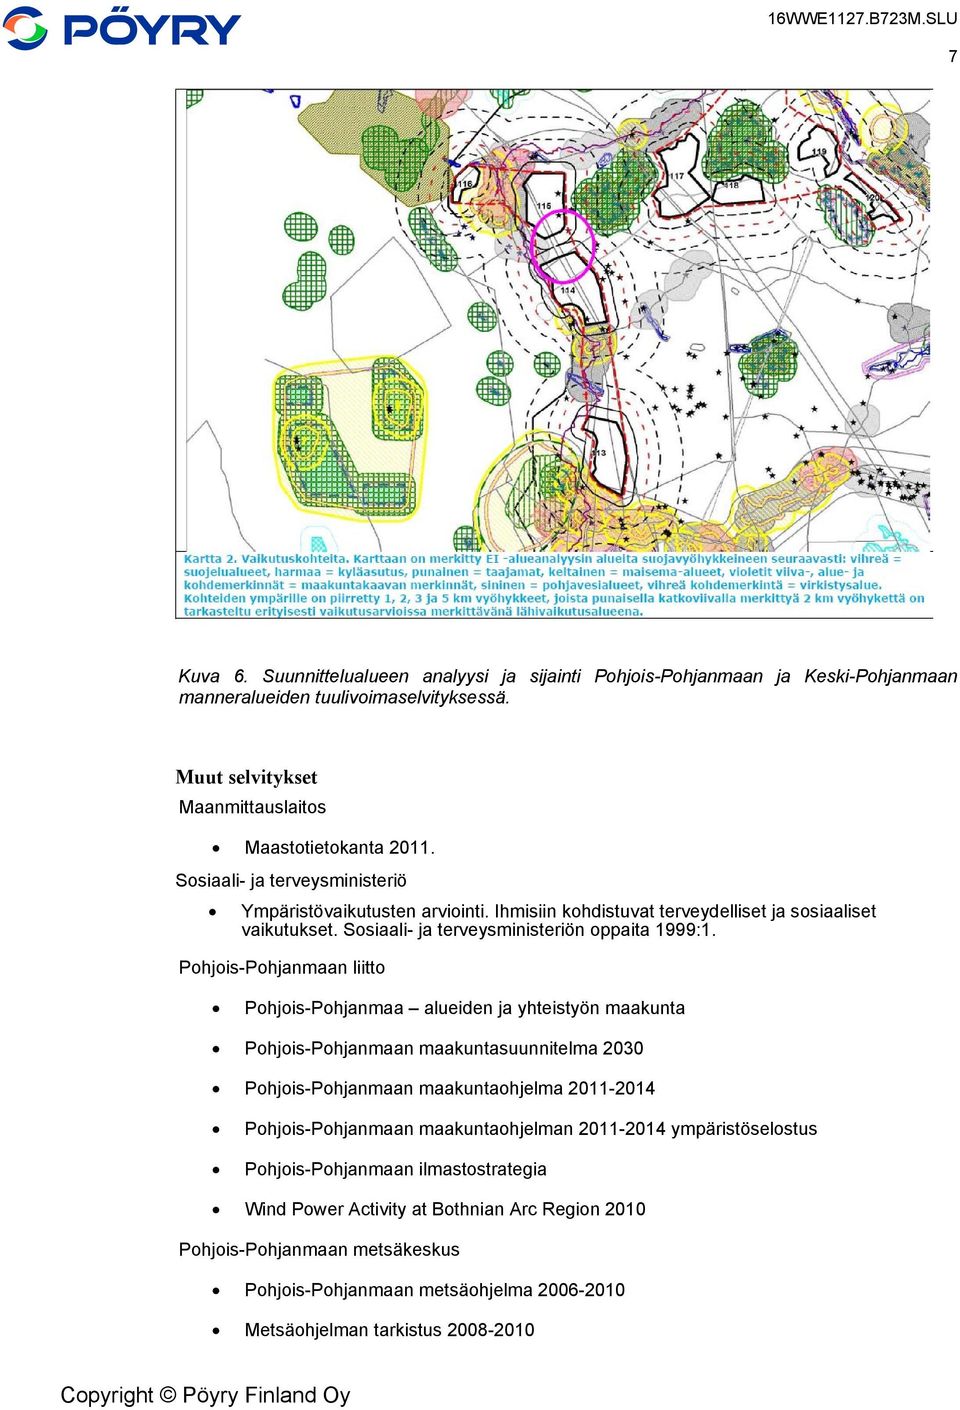 Pohjois-Pohjanmaan liitto Pohjois-Pohjanmaa alueiden ja yhteistyön maakunta Pohjois-Pohjanmaan maakuntasuunnitelma 2030 Pohjois-Pohjanmaan maakuntaohjelma 2011-2014 Pohjois-Pohjanmaan